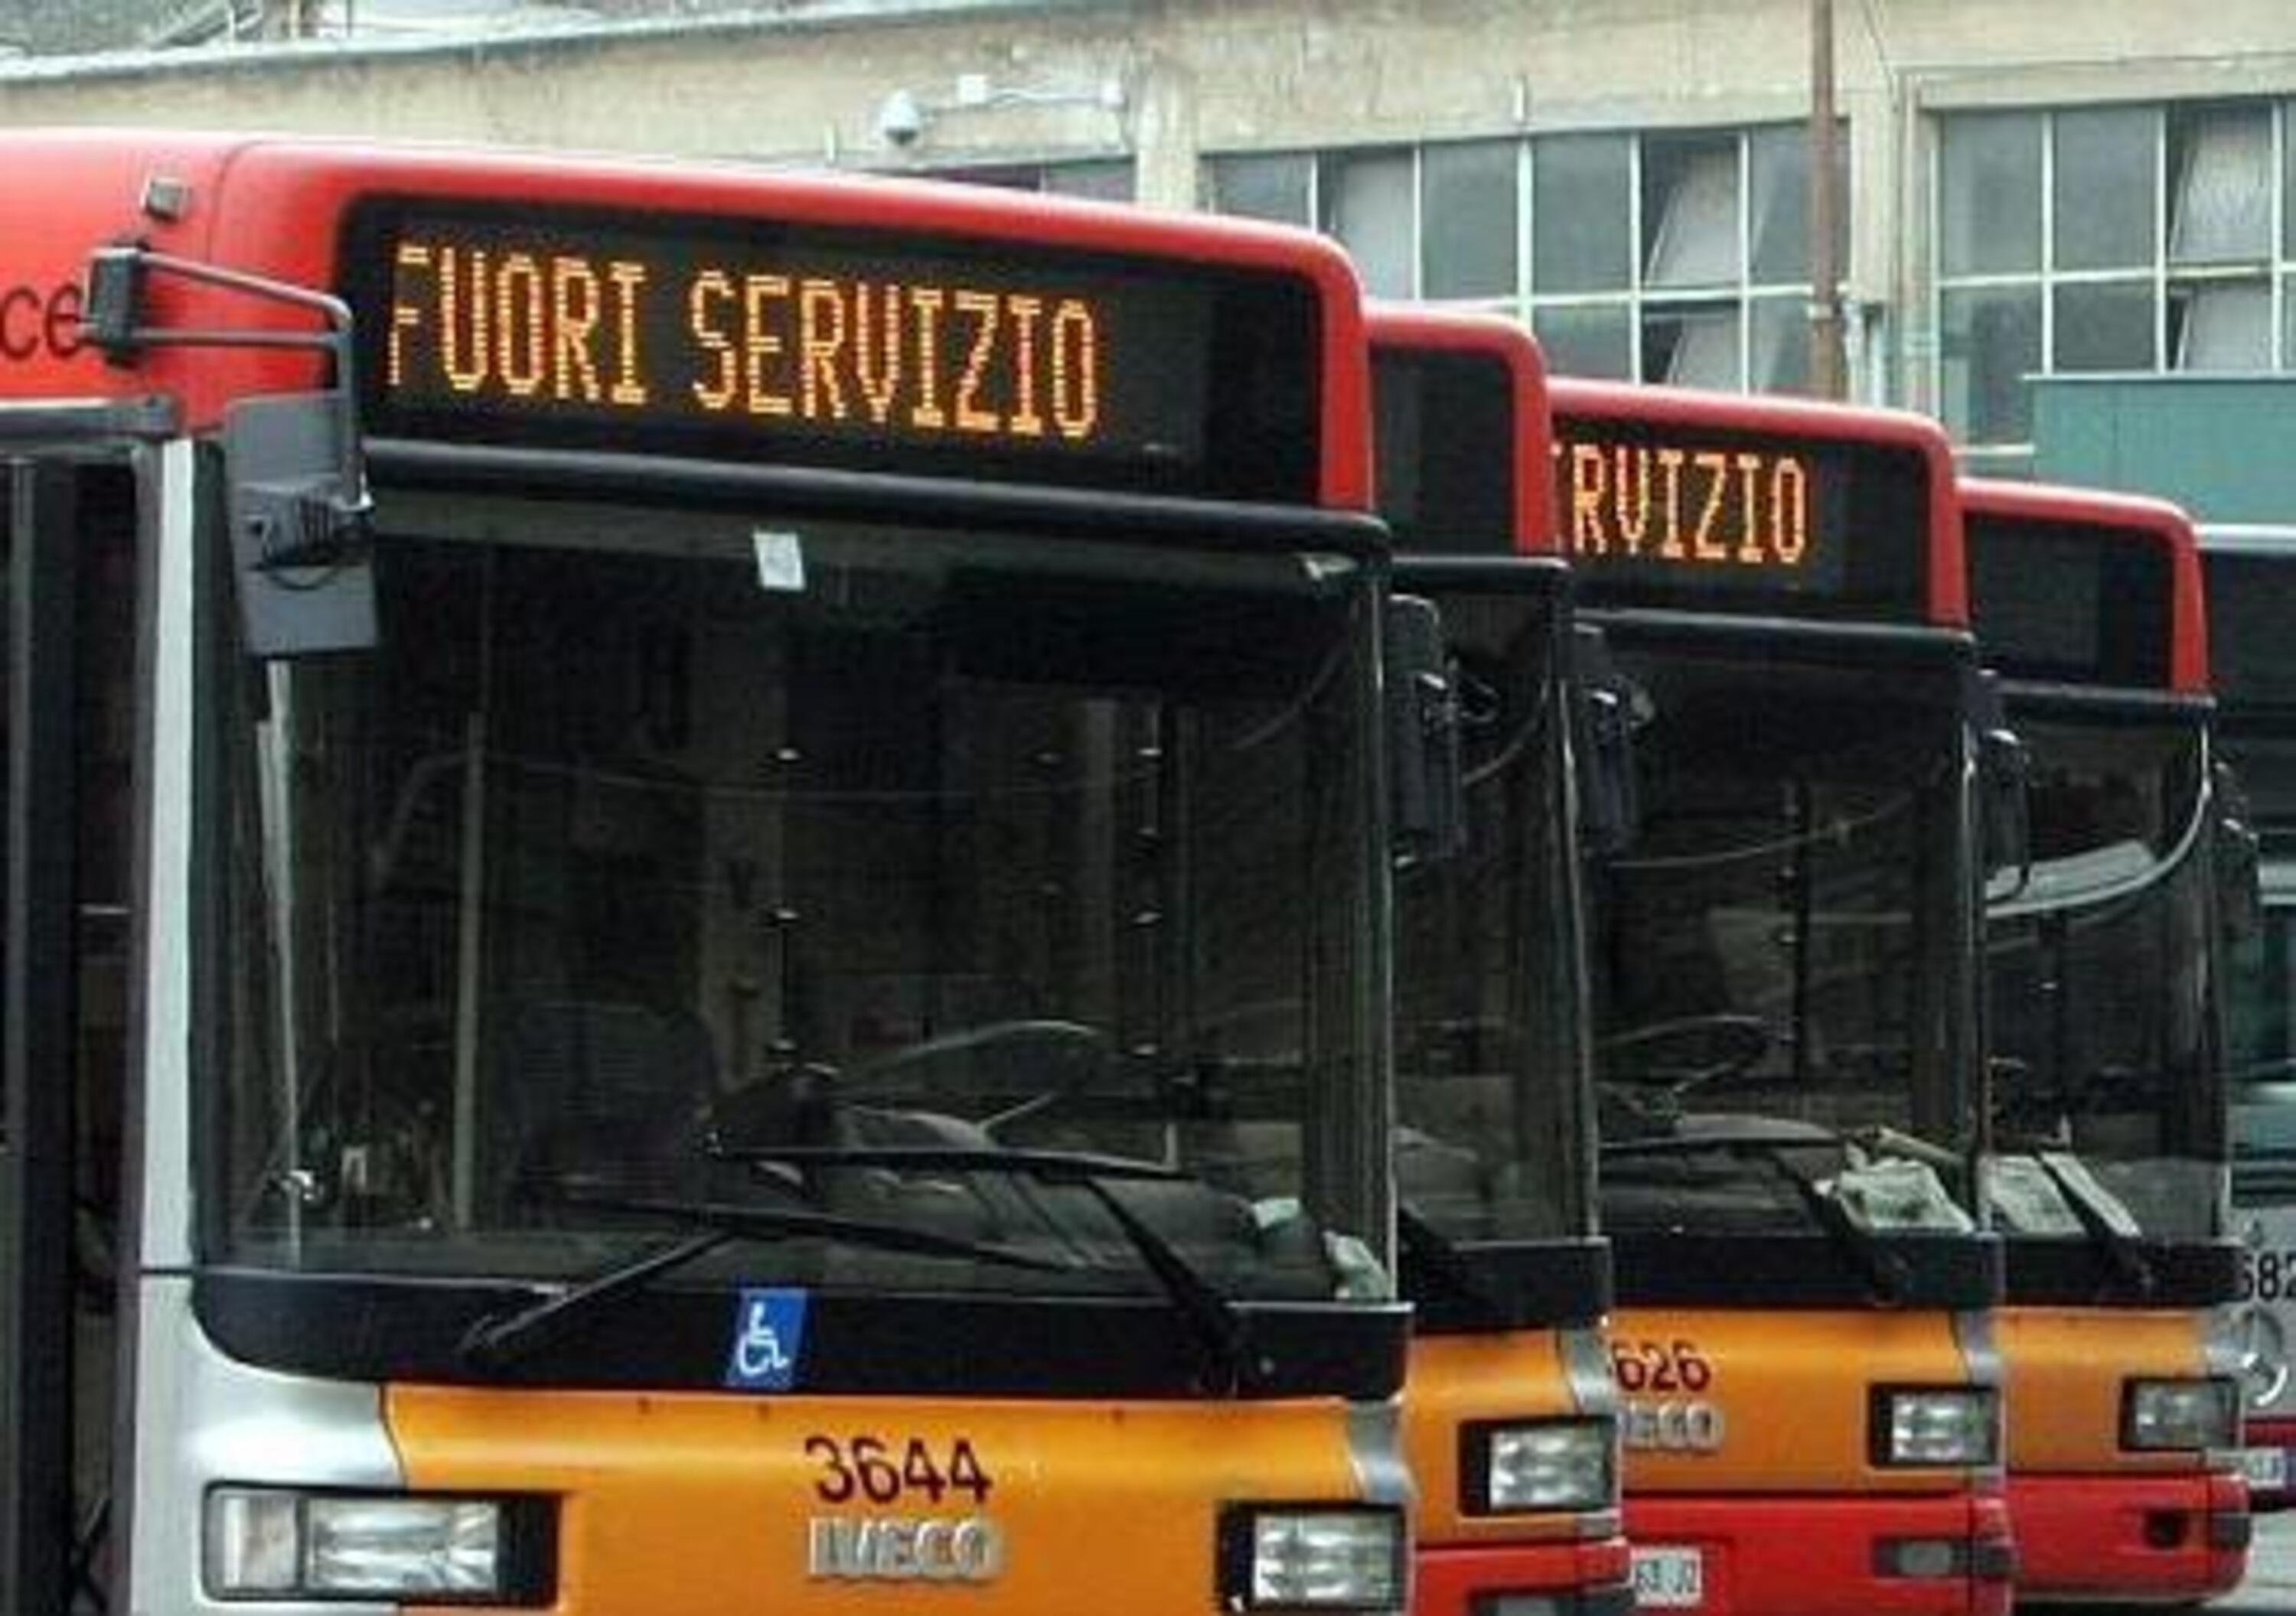 Roma: ZTL diurne disattivate per sciopero trasporti